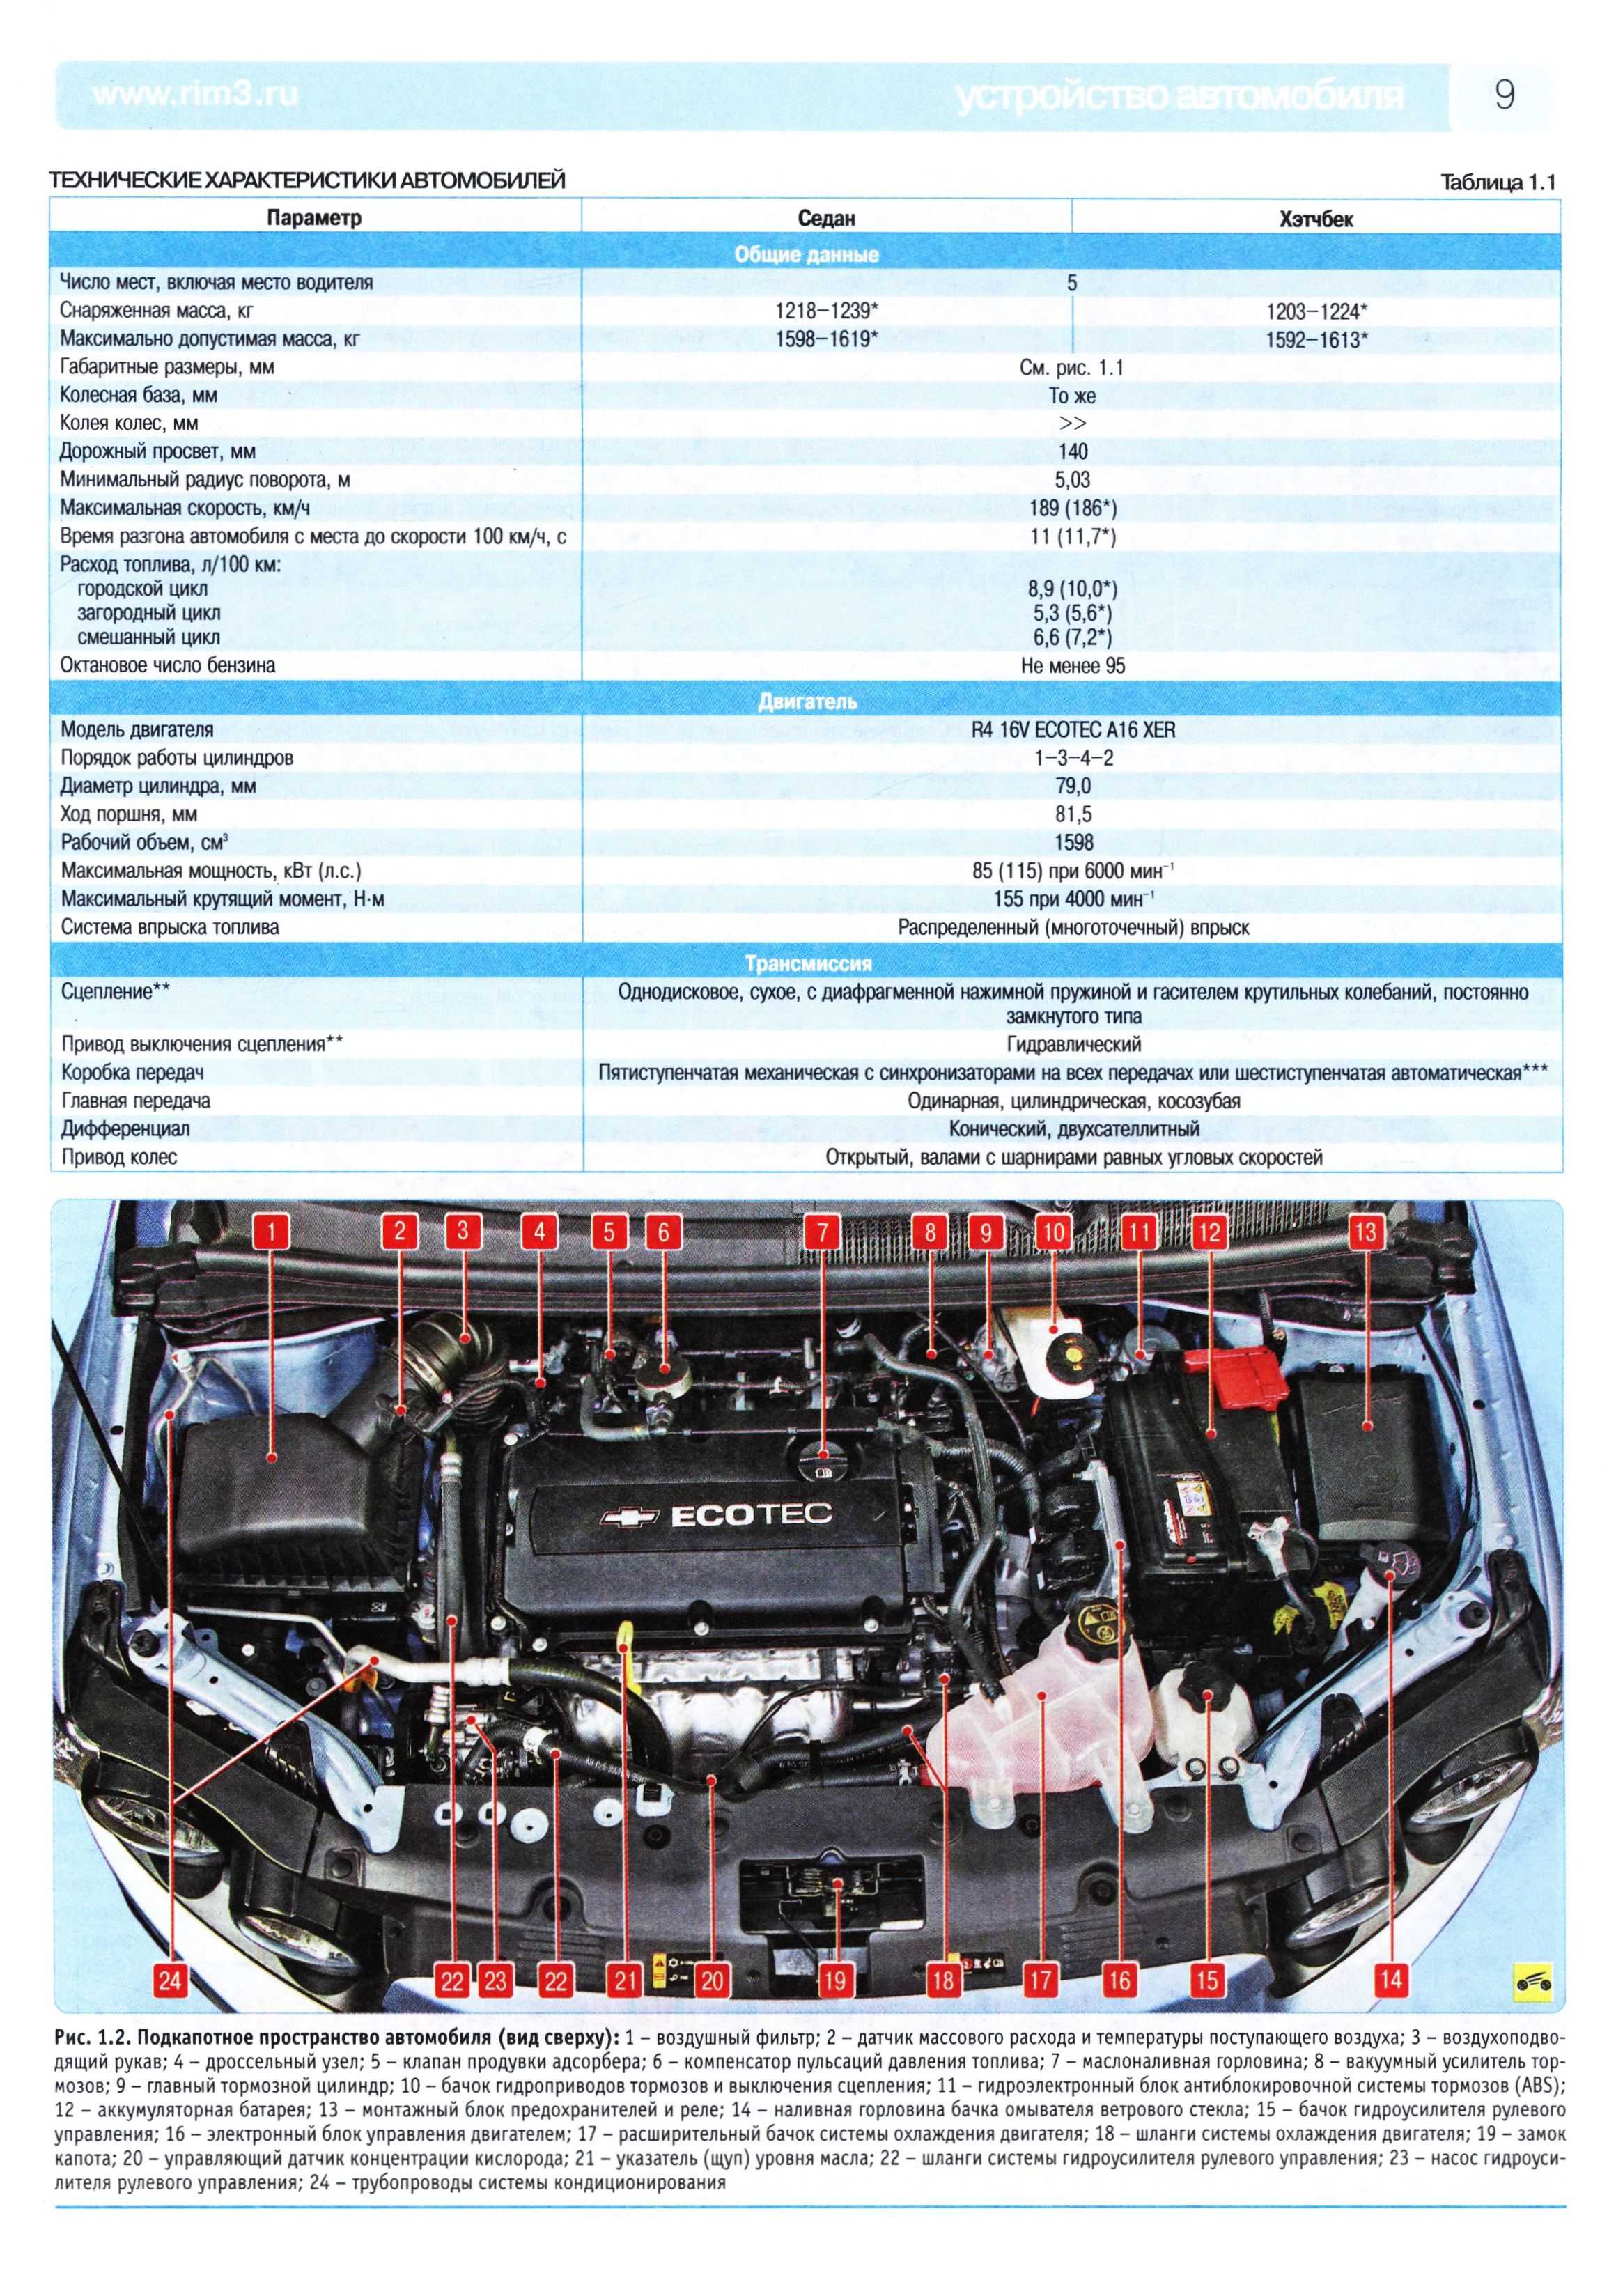 Двигатель daewoo gm f16d3 1,6 л/109 л. с.